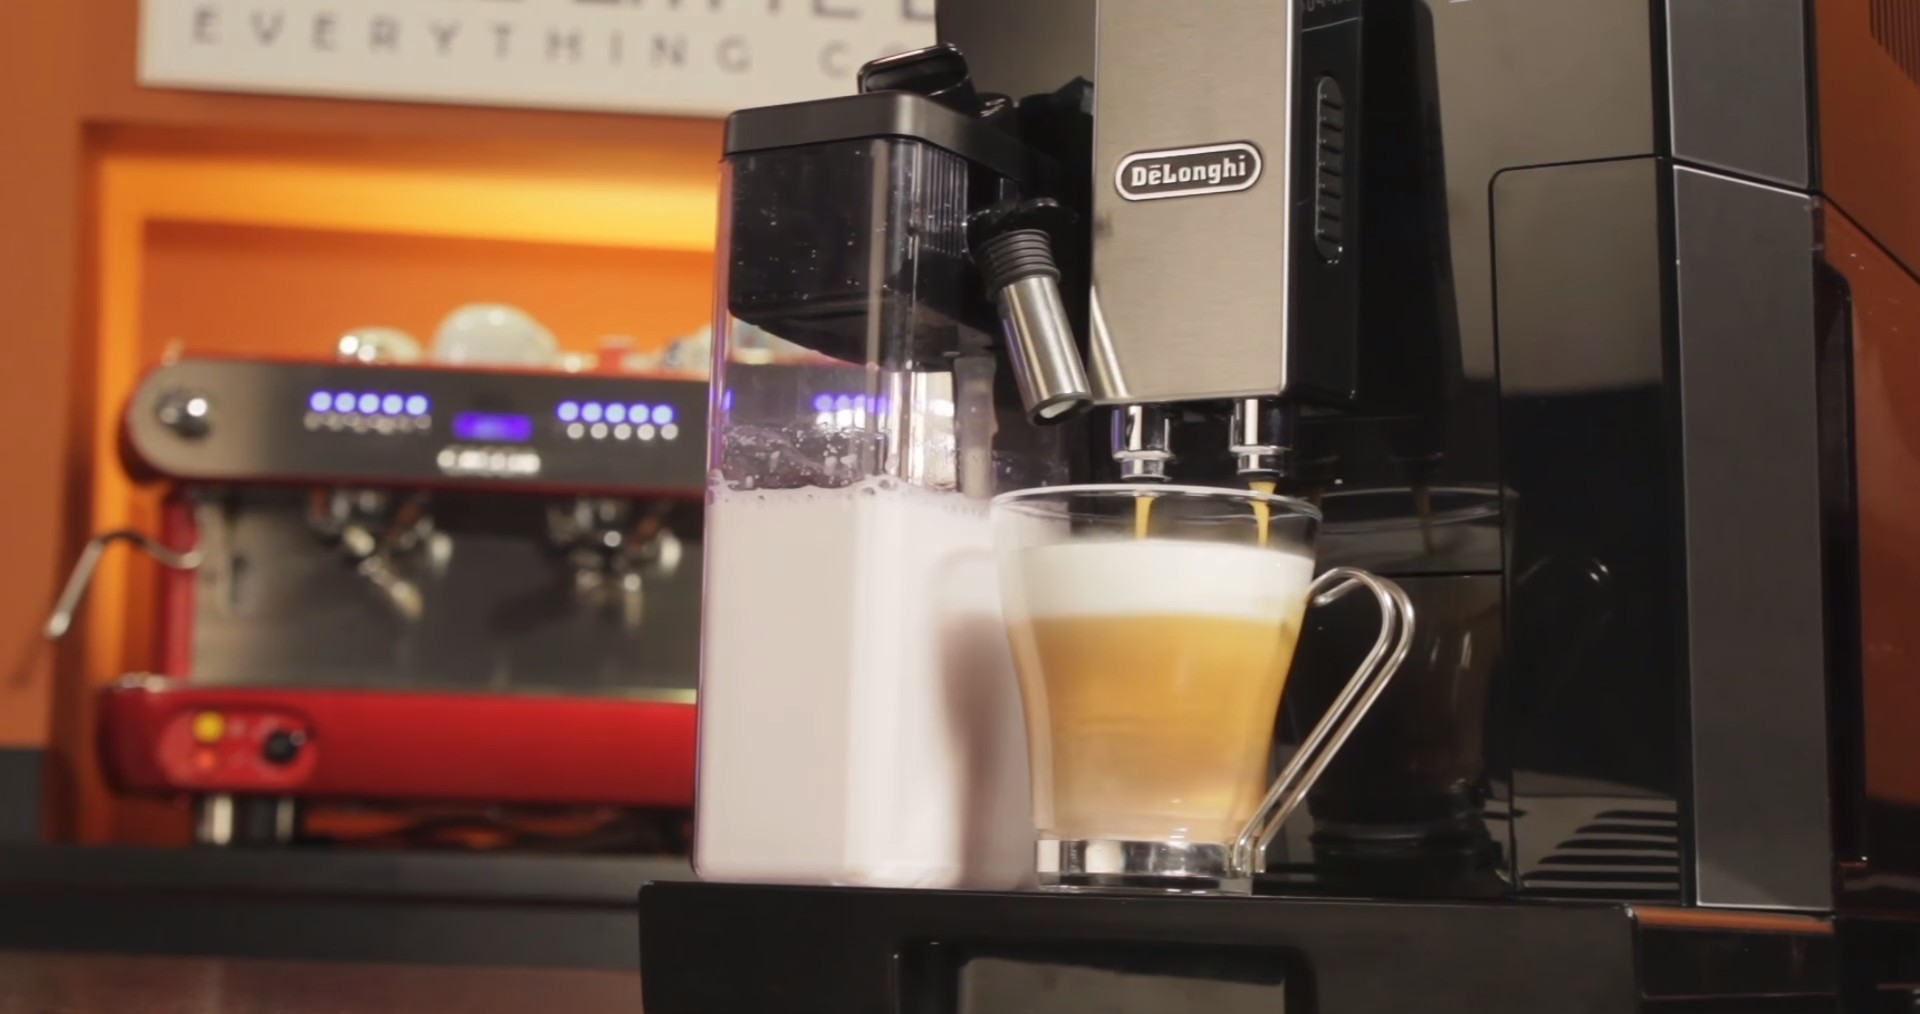 DeLonghi Digital Automatic Cappuccino, Latte, Macchiato and Espresso Machine